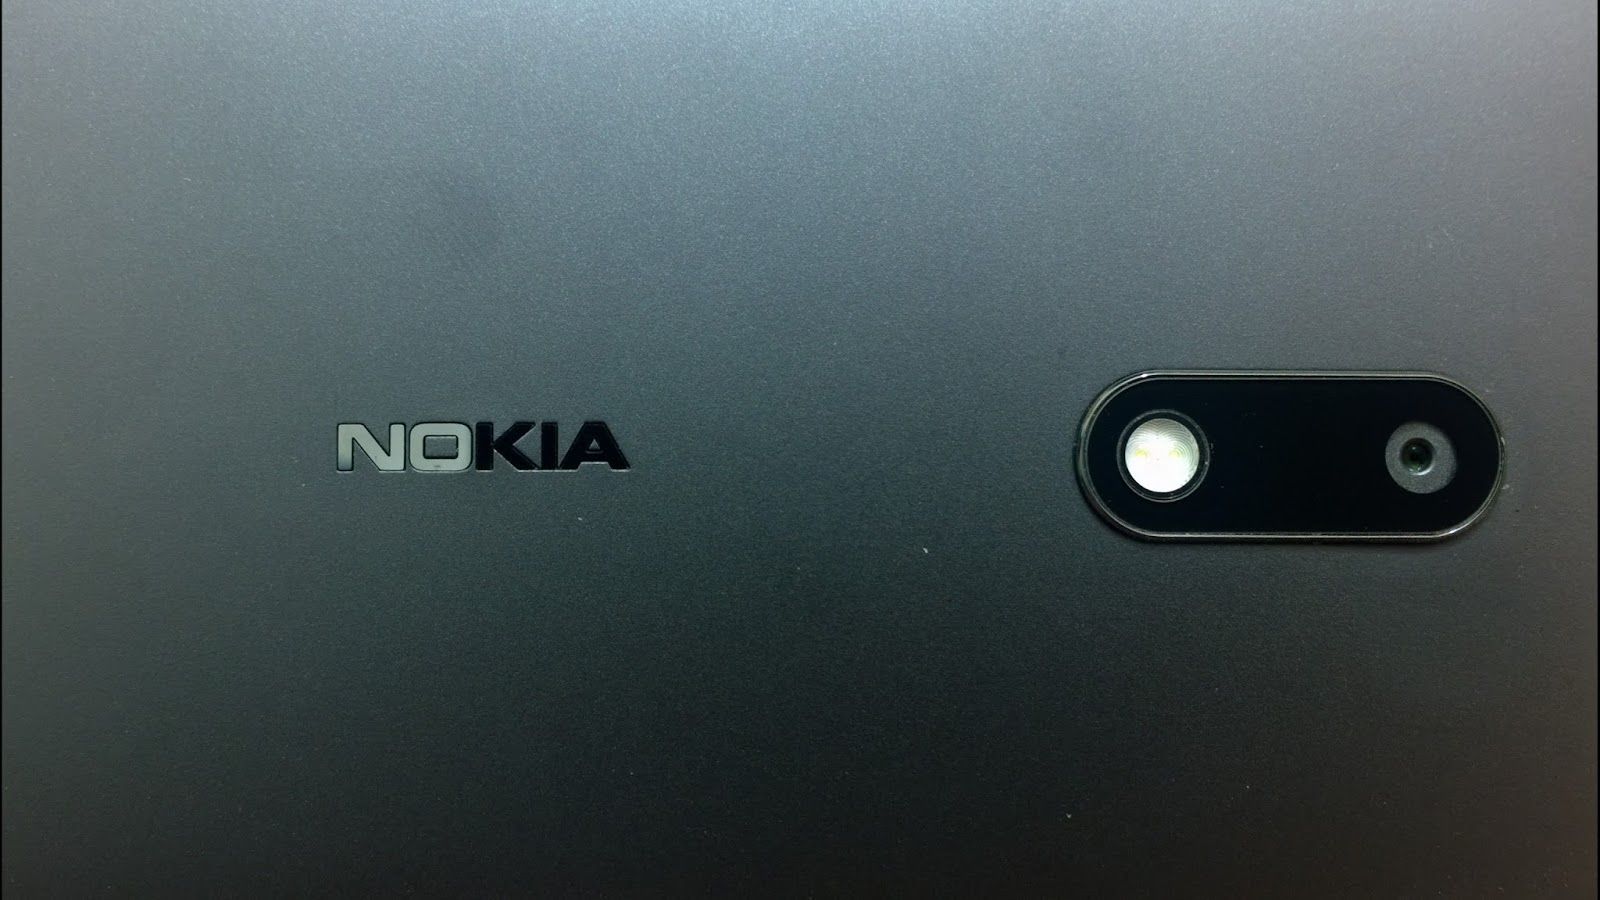 Nokia-6-logo